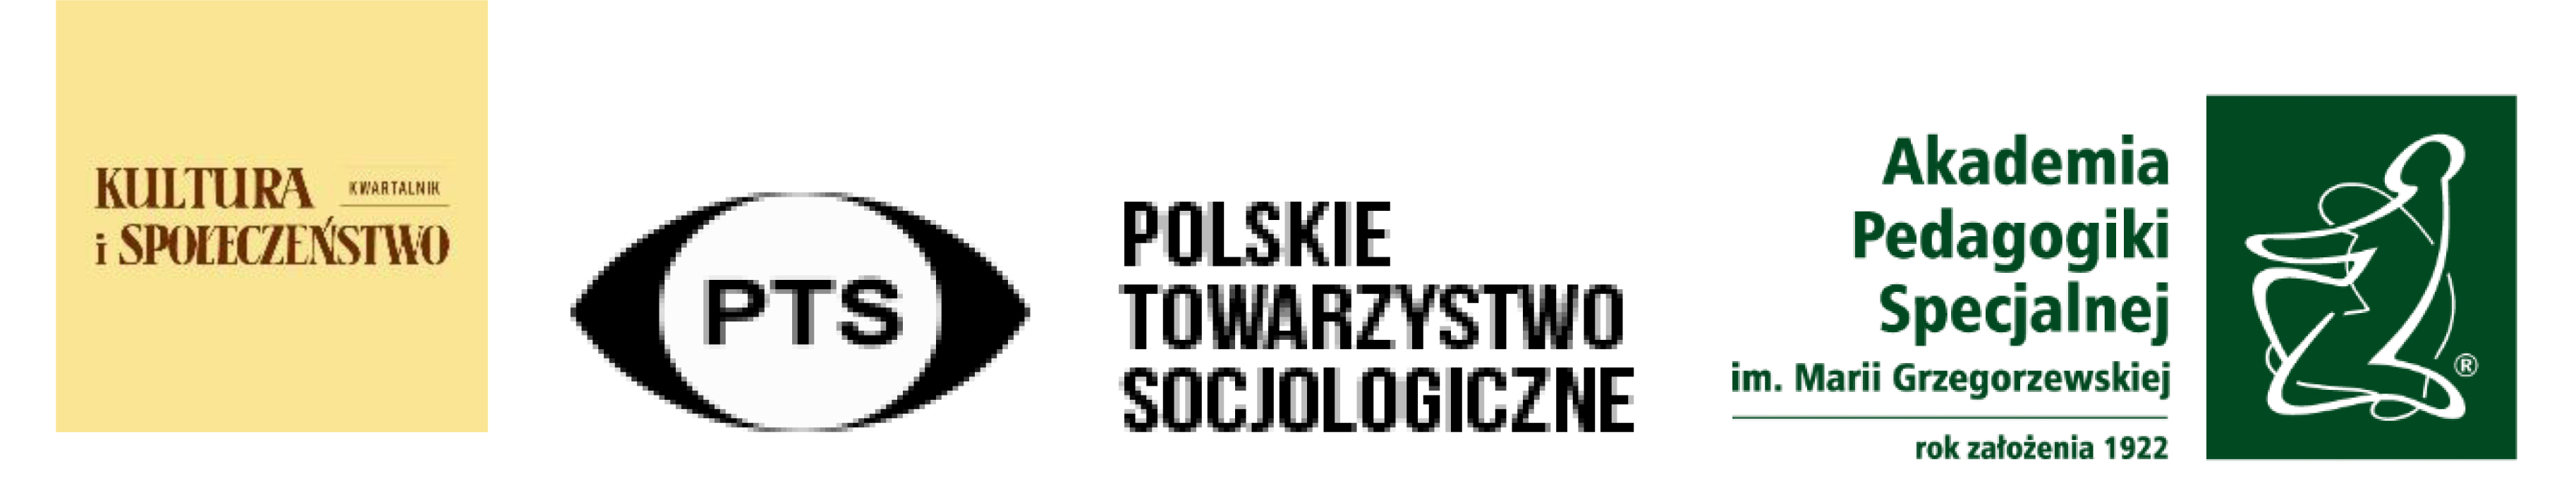 logotypy organizatorów